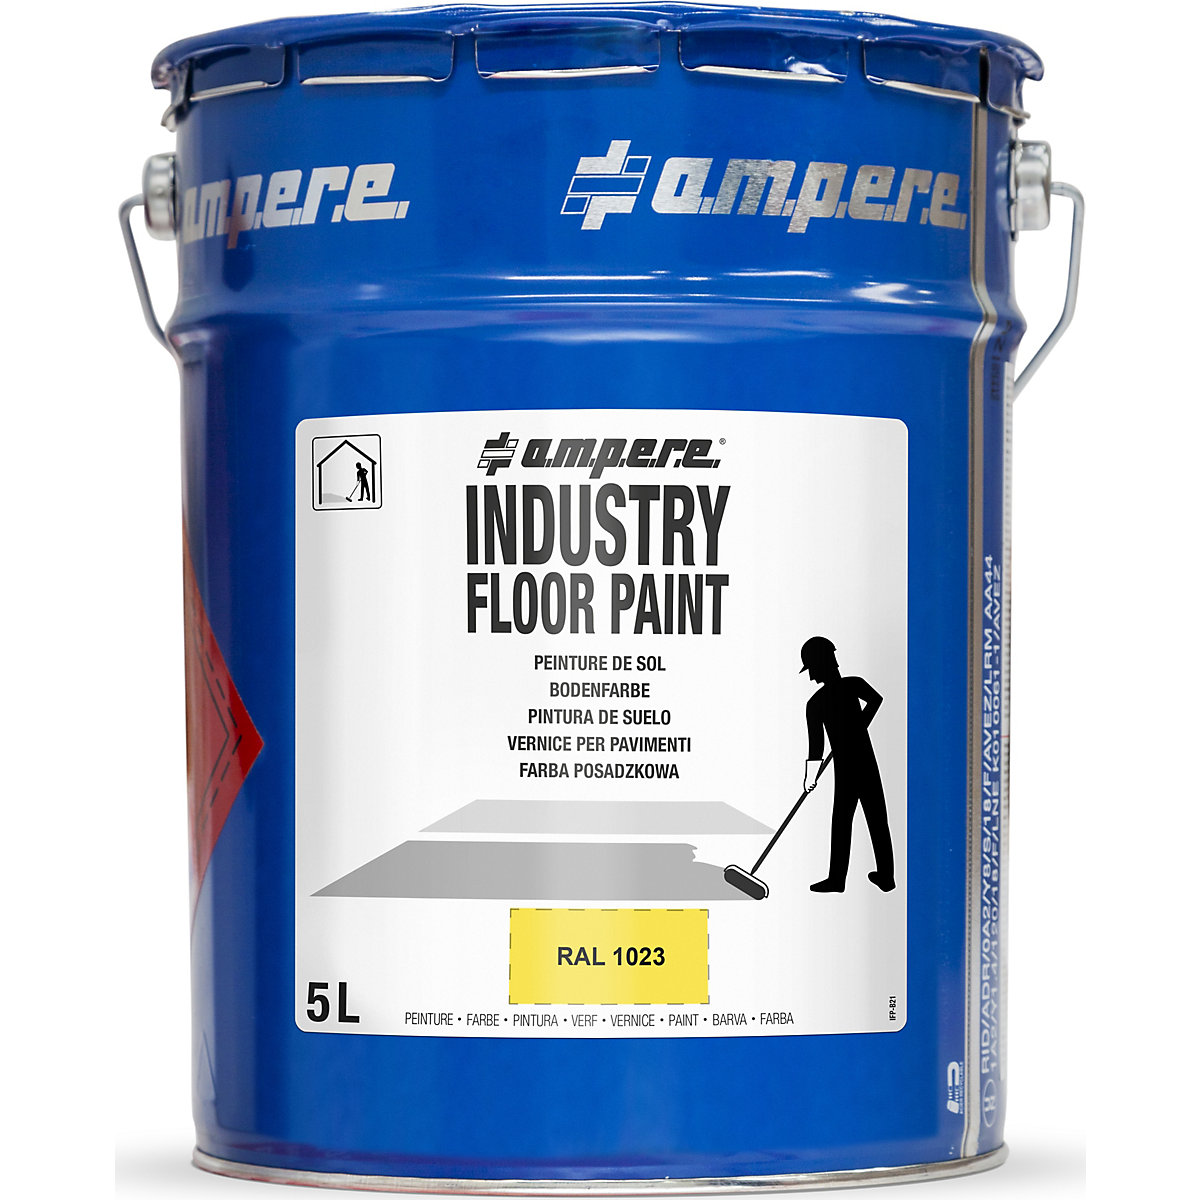 Barva pro podlahové značení Industry Floor Paint® – Ampere, objem 5 l, žlutá-11